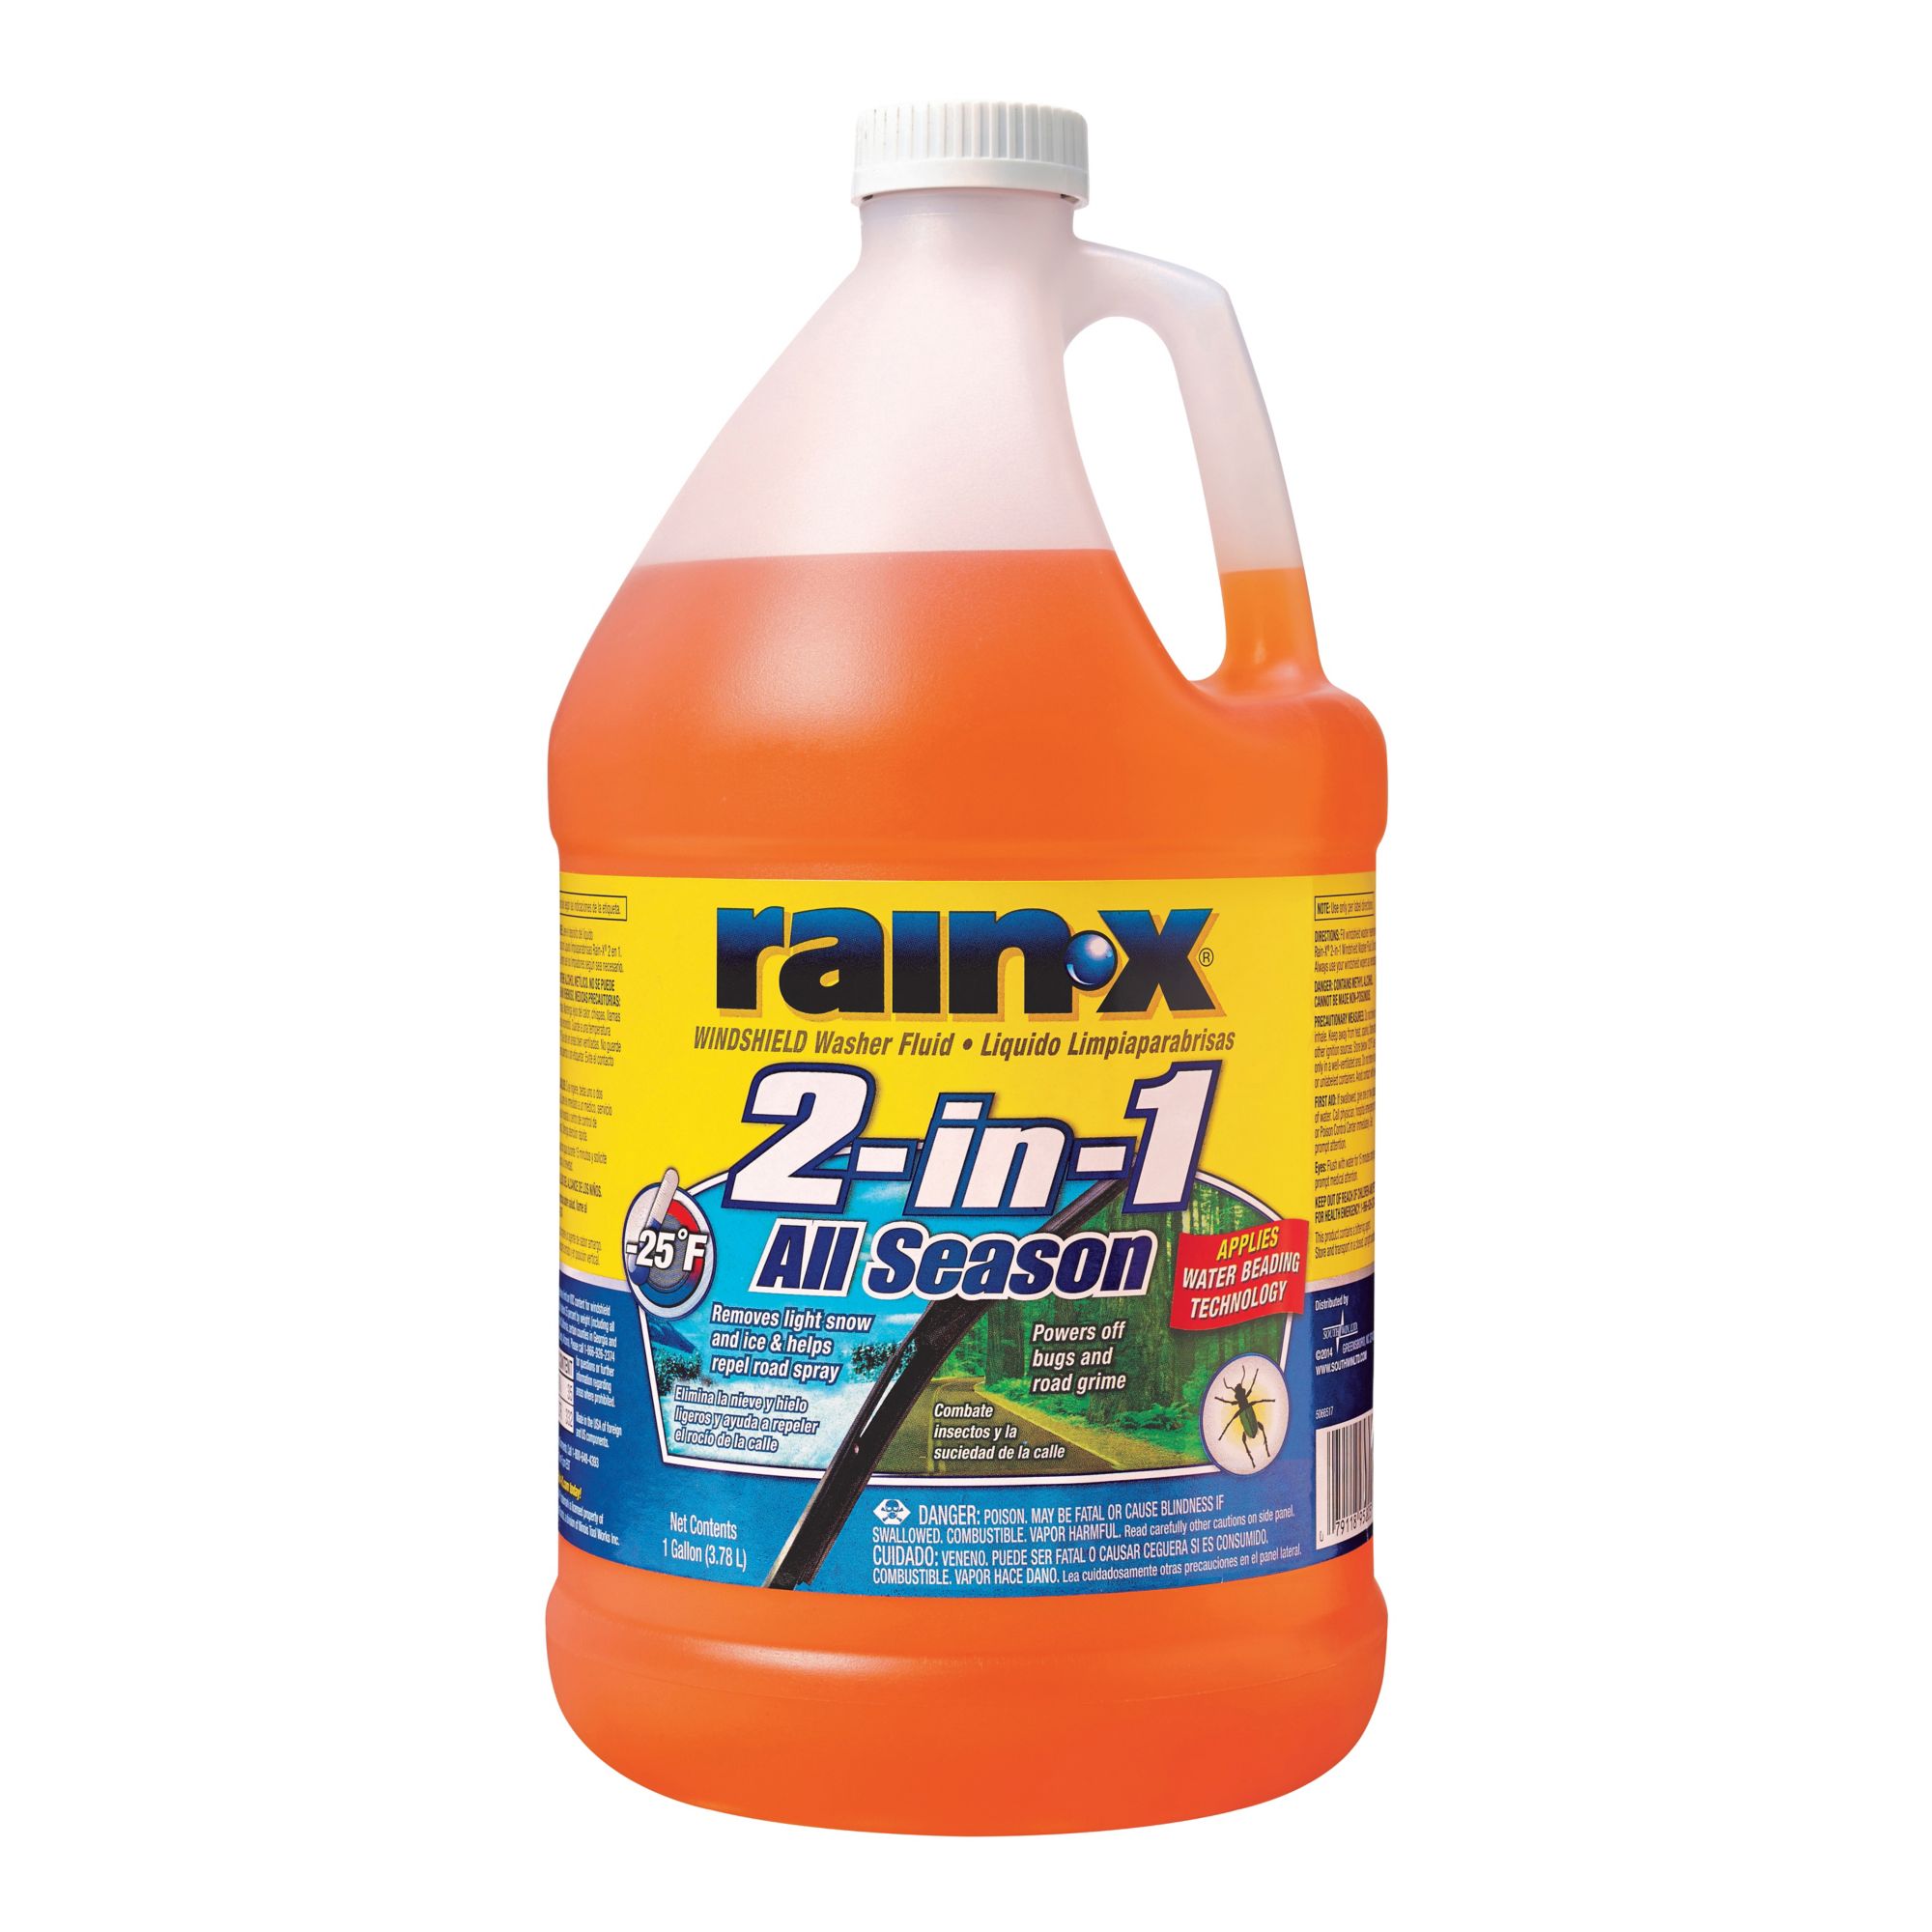 Rain-X Windshield Washer Fluid, 1 Gallon, 2 ct